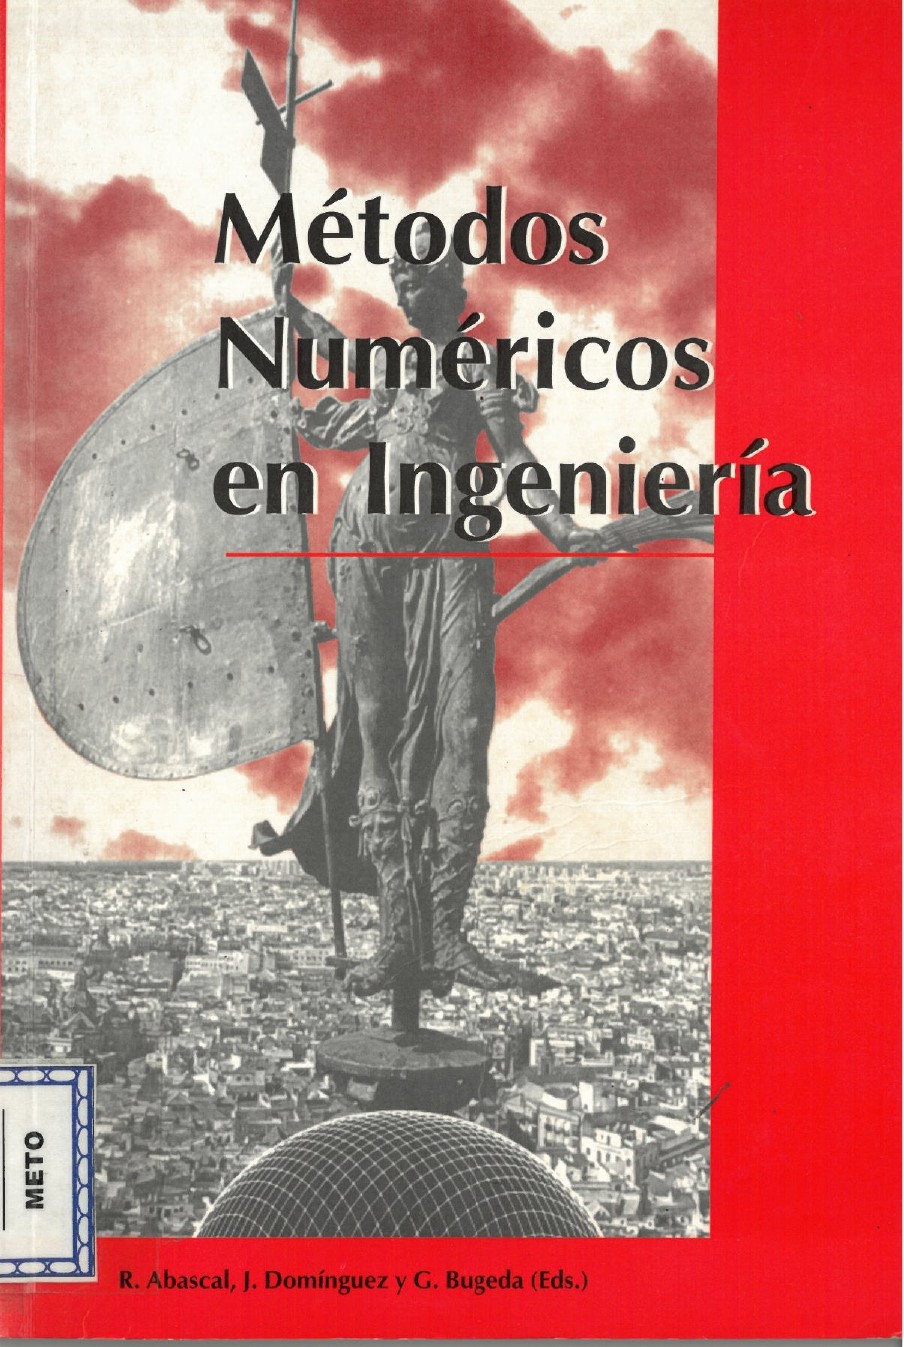 Imagen de portada del libro Métodos Numéricos en Ingeniería